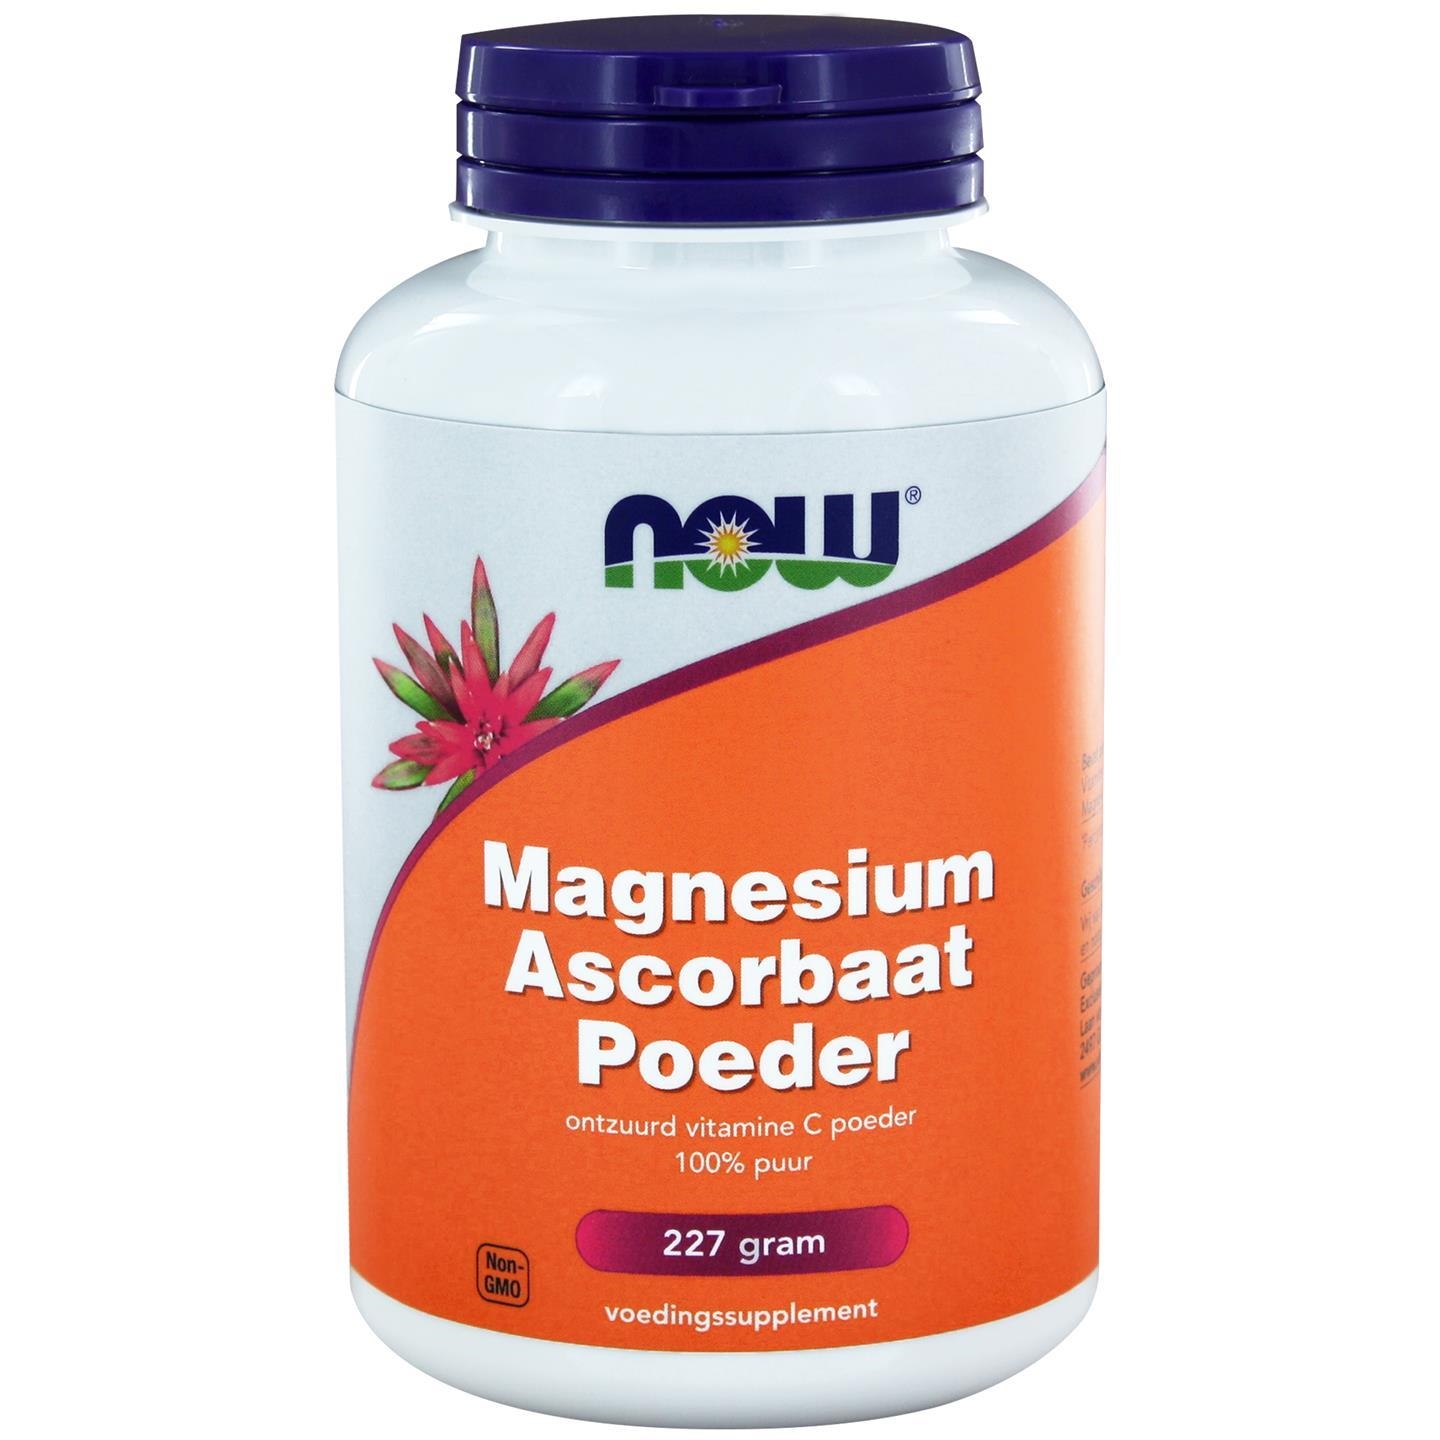 Vitamine C Poeder Magnesium Ascorbaat  (voorheen Magnesium Ascorbaat Poeder) - 227 gram